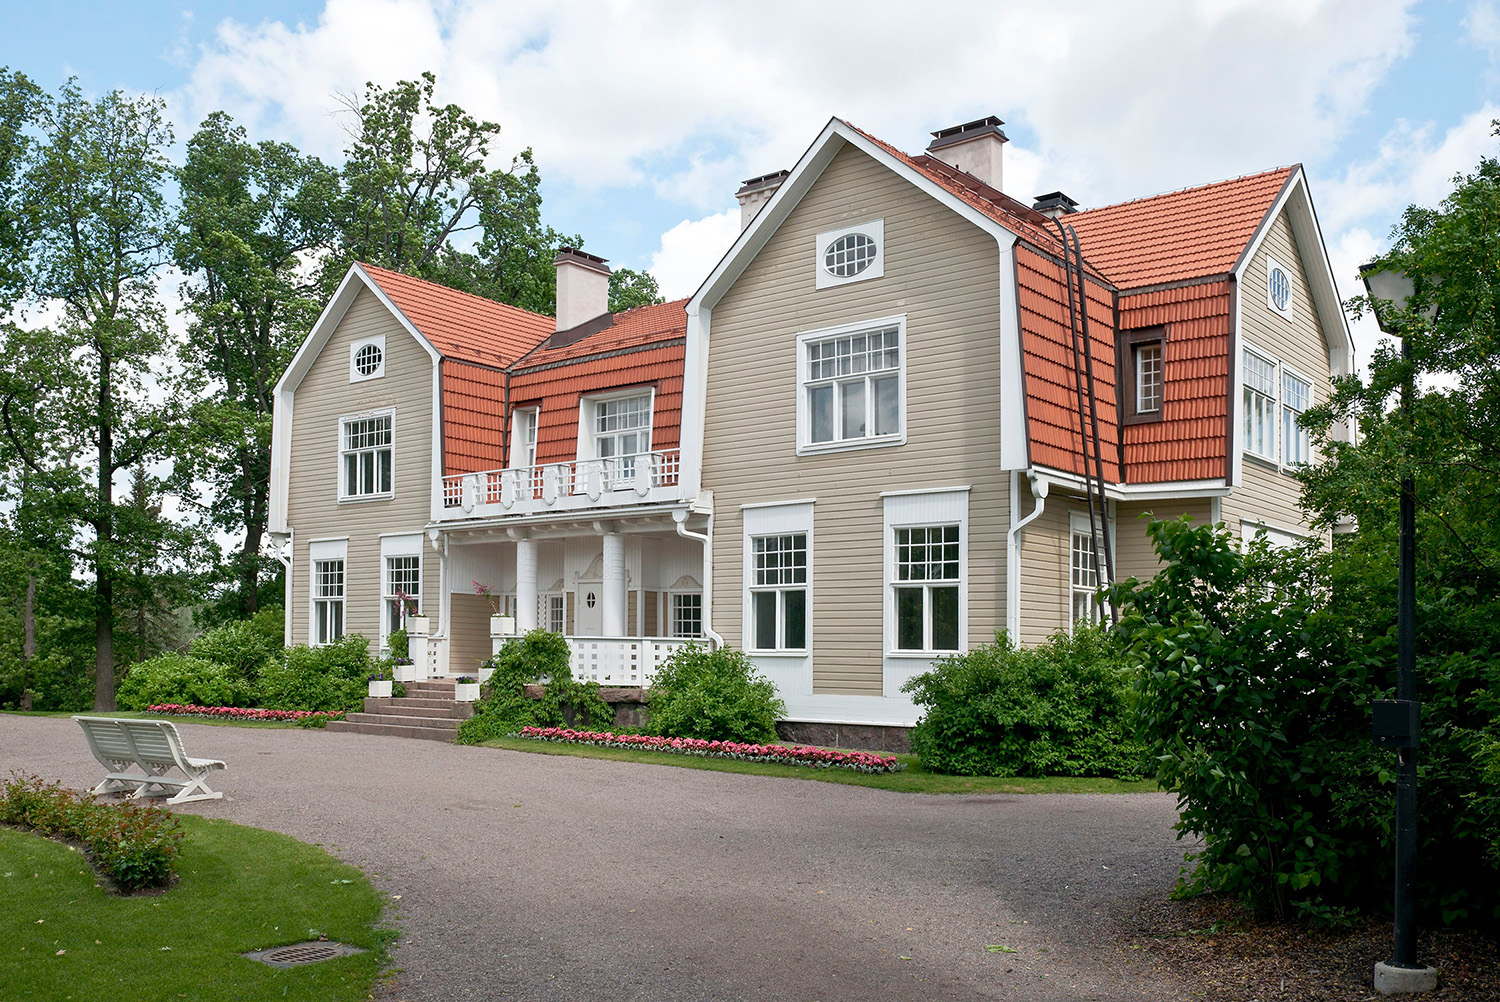 Håkansböle manor